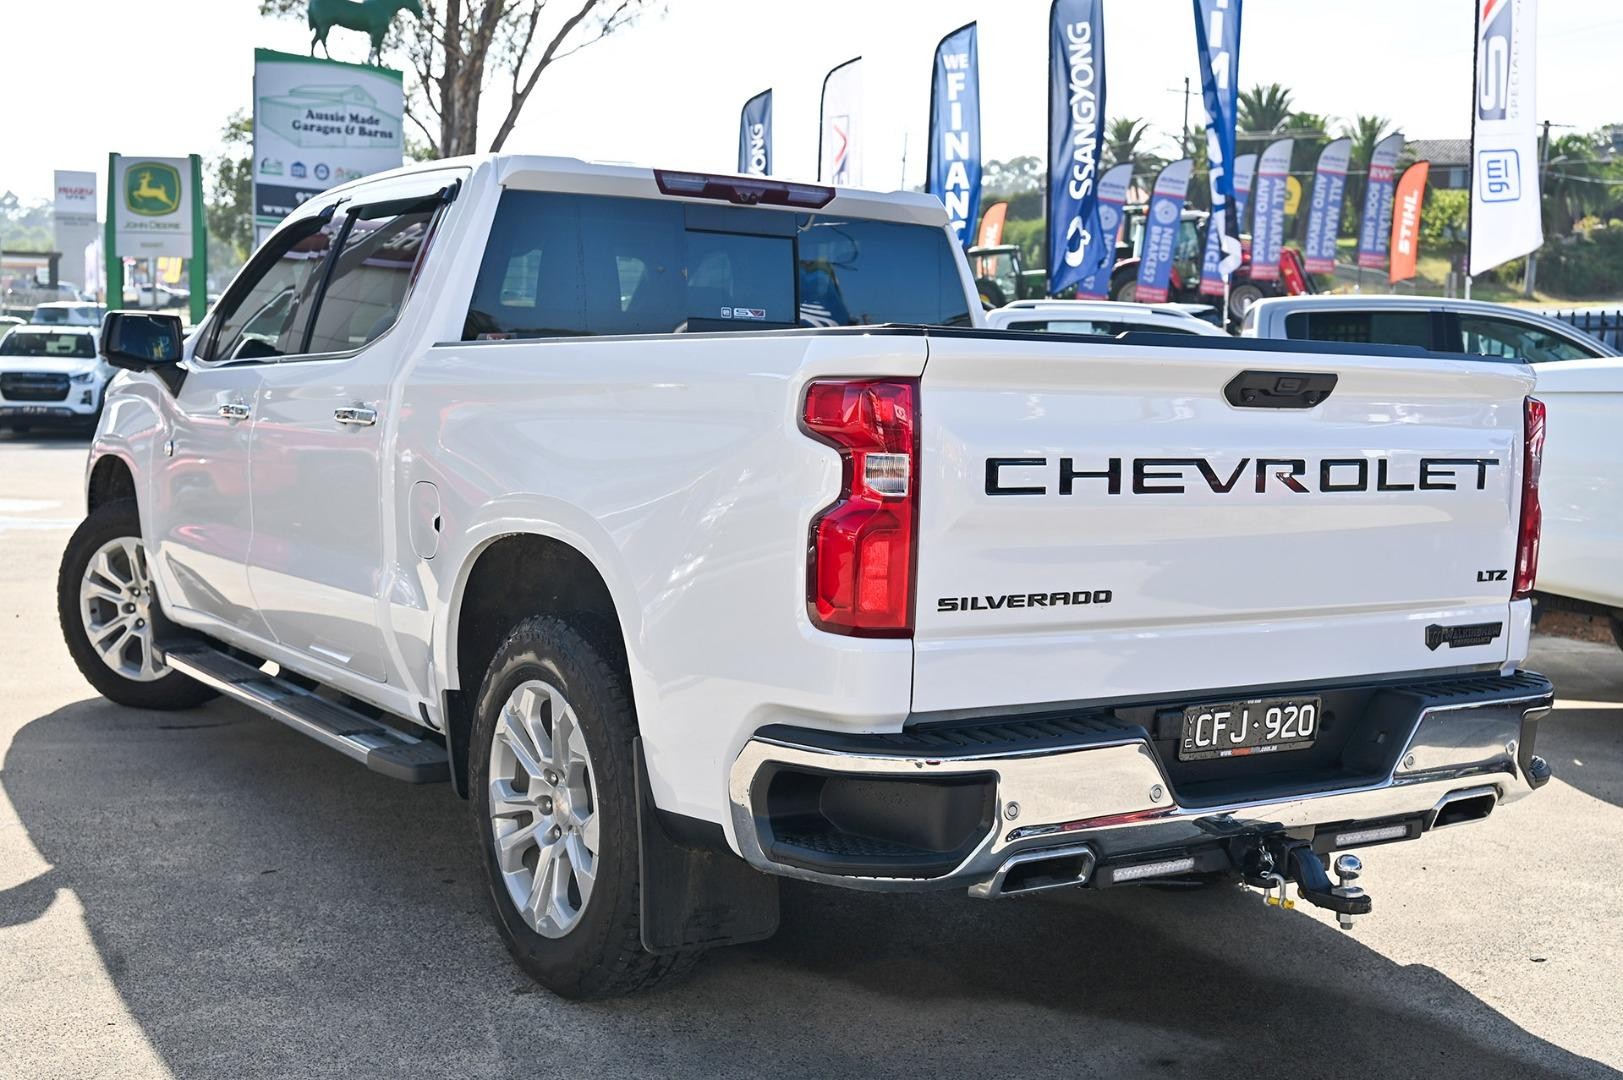 Chevrolet Silverado image 4